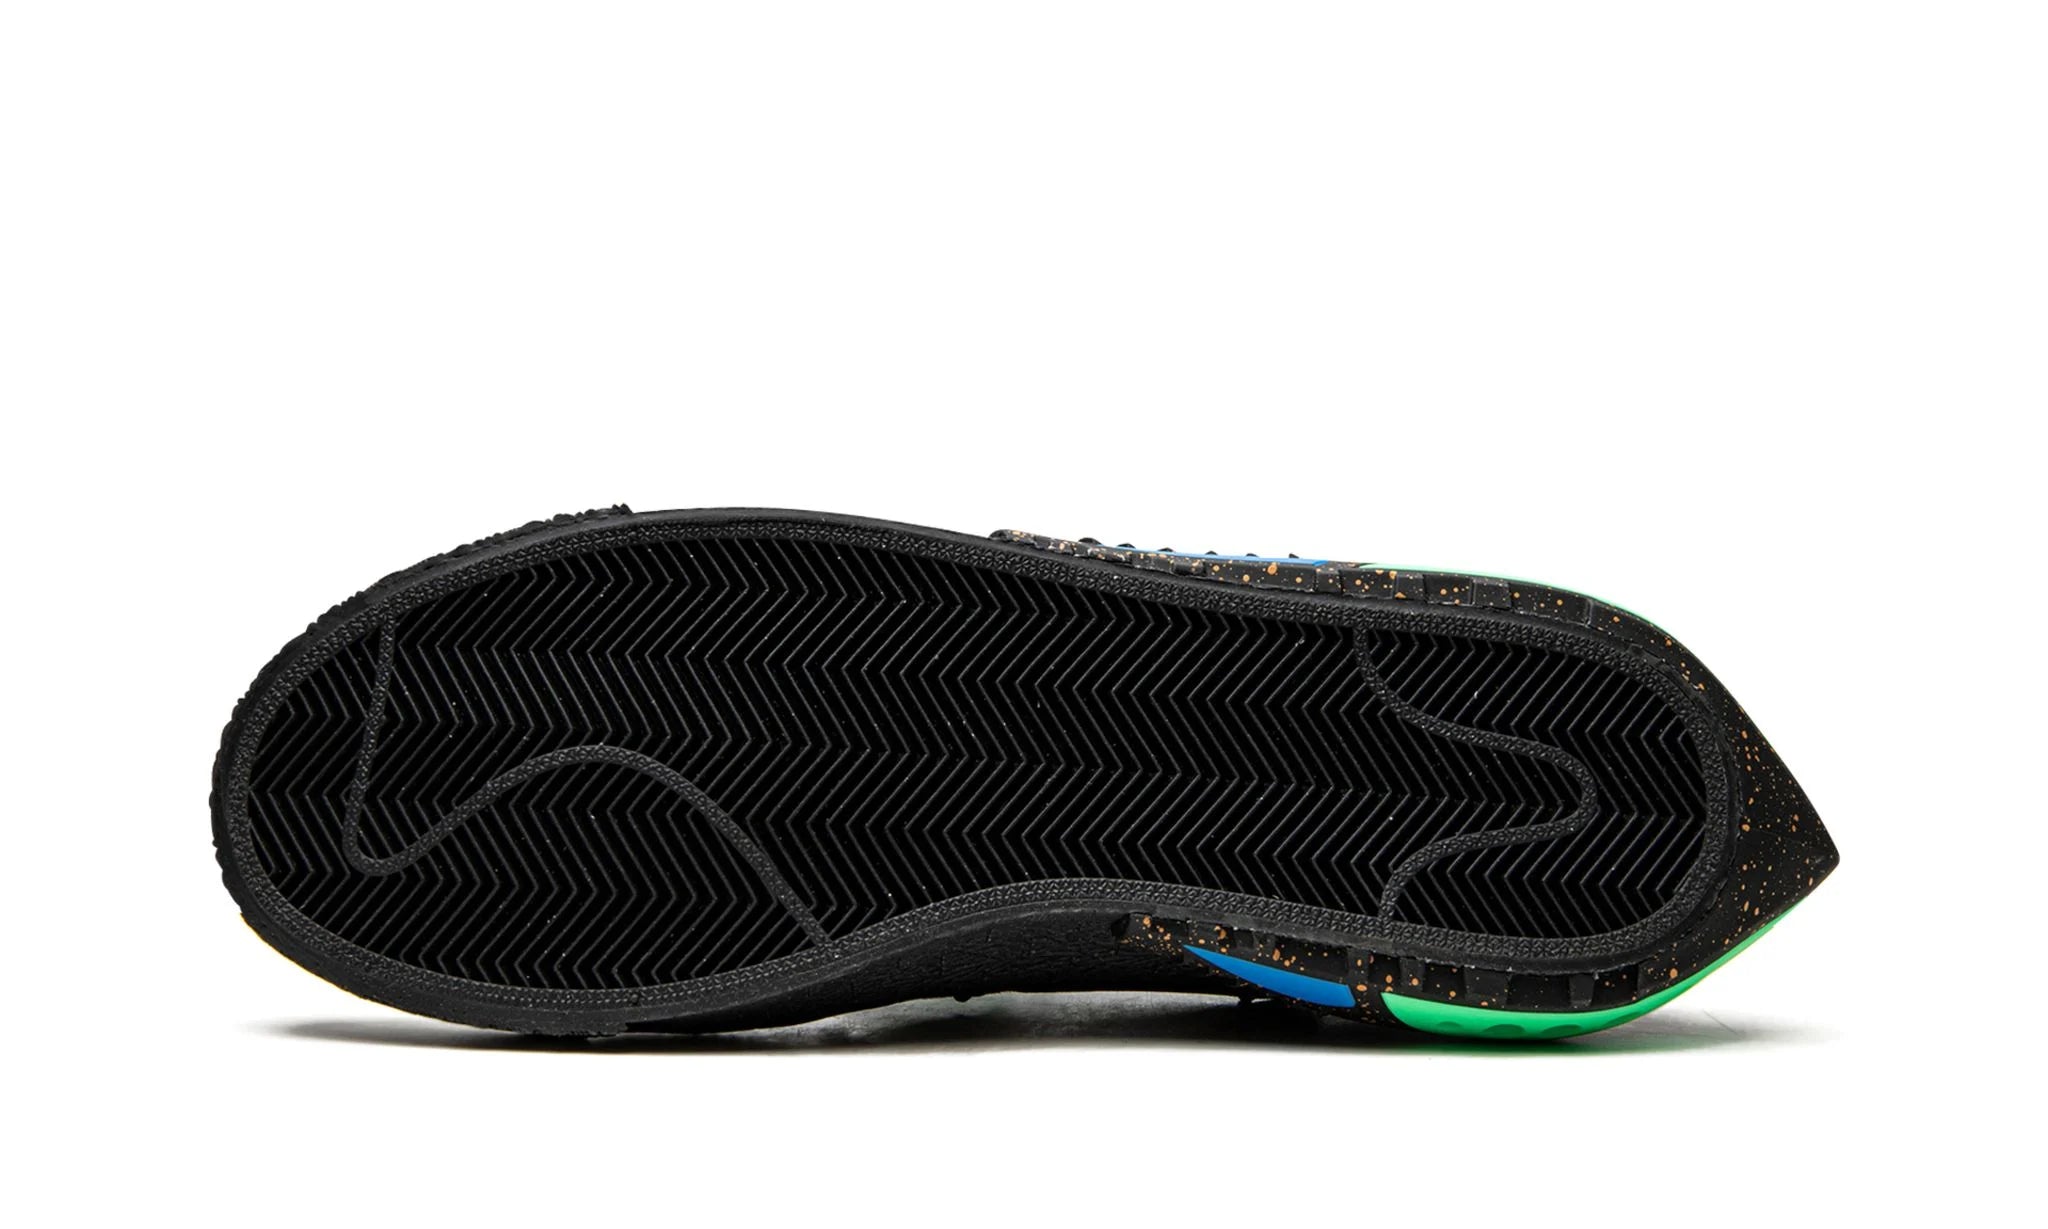 Nike Blazer Low Off-White Black Electro Green - Dunk Low - Pirri - Dunk Low Czarny